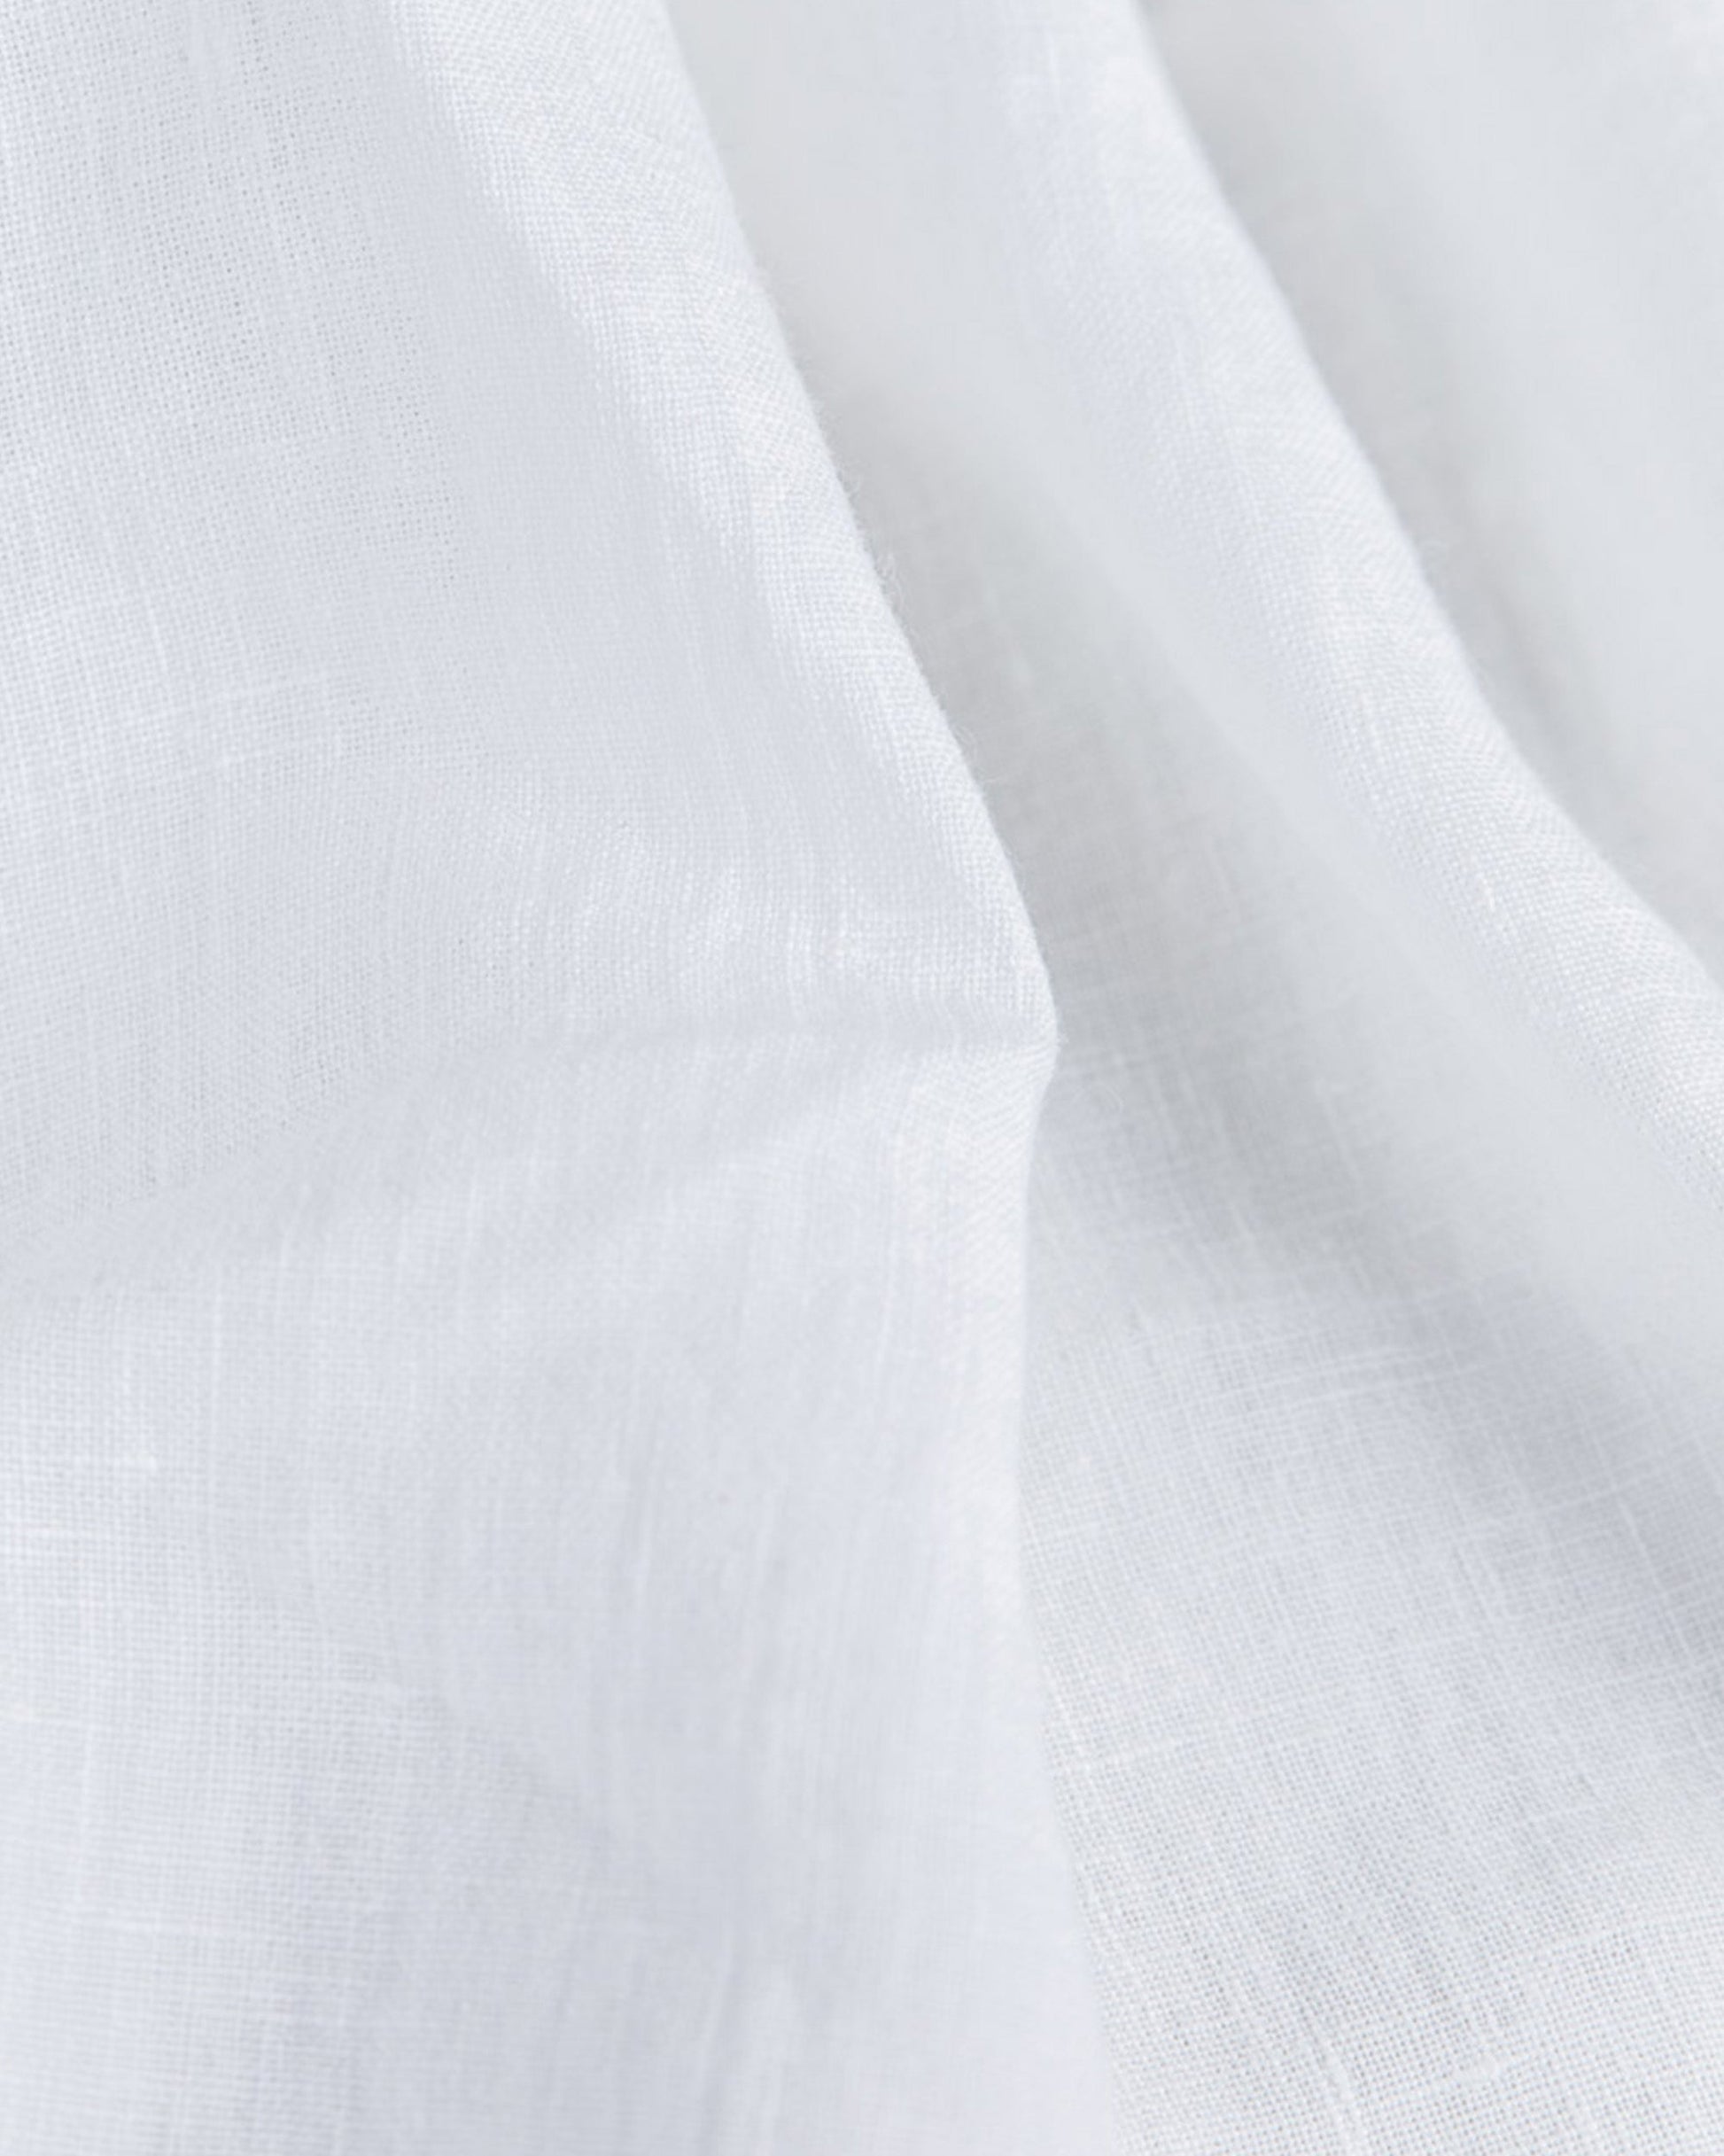 White linen flat sheet - MagicLinen